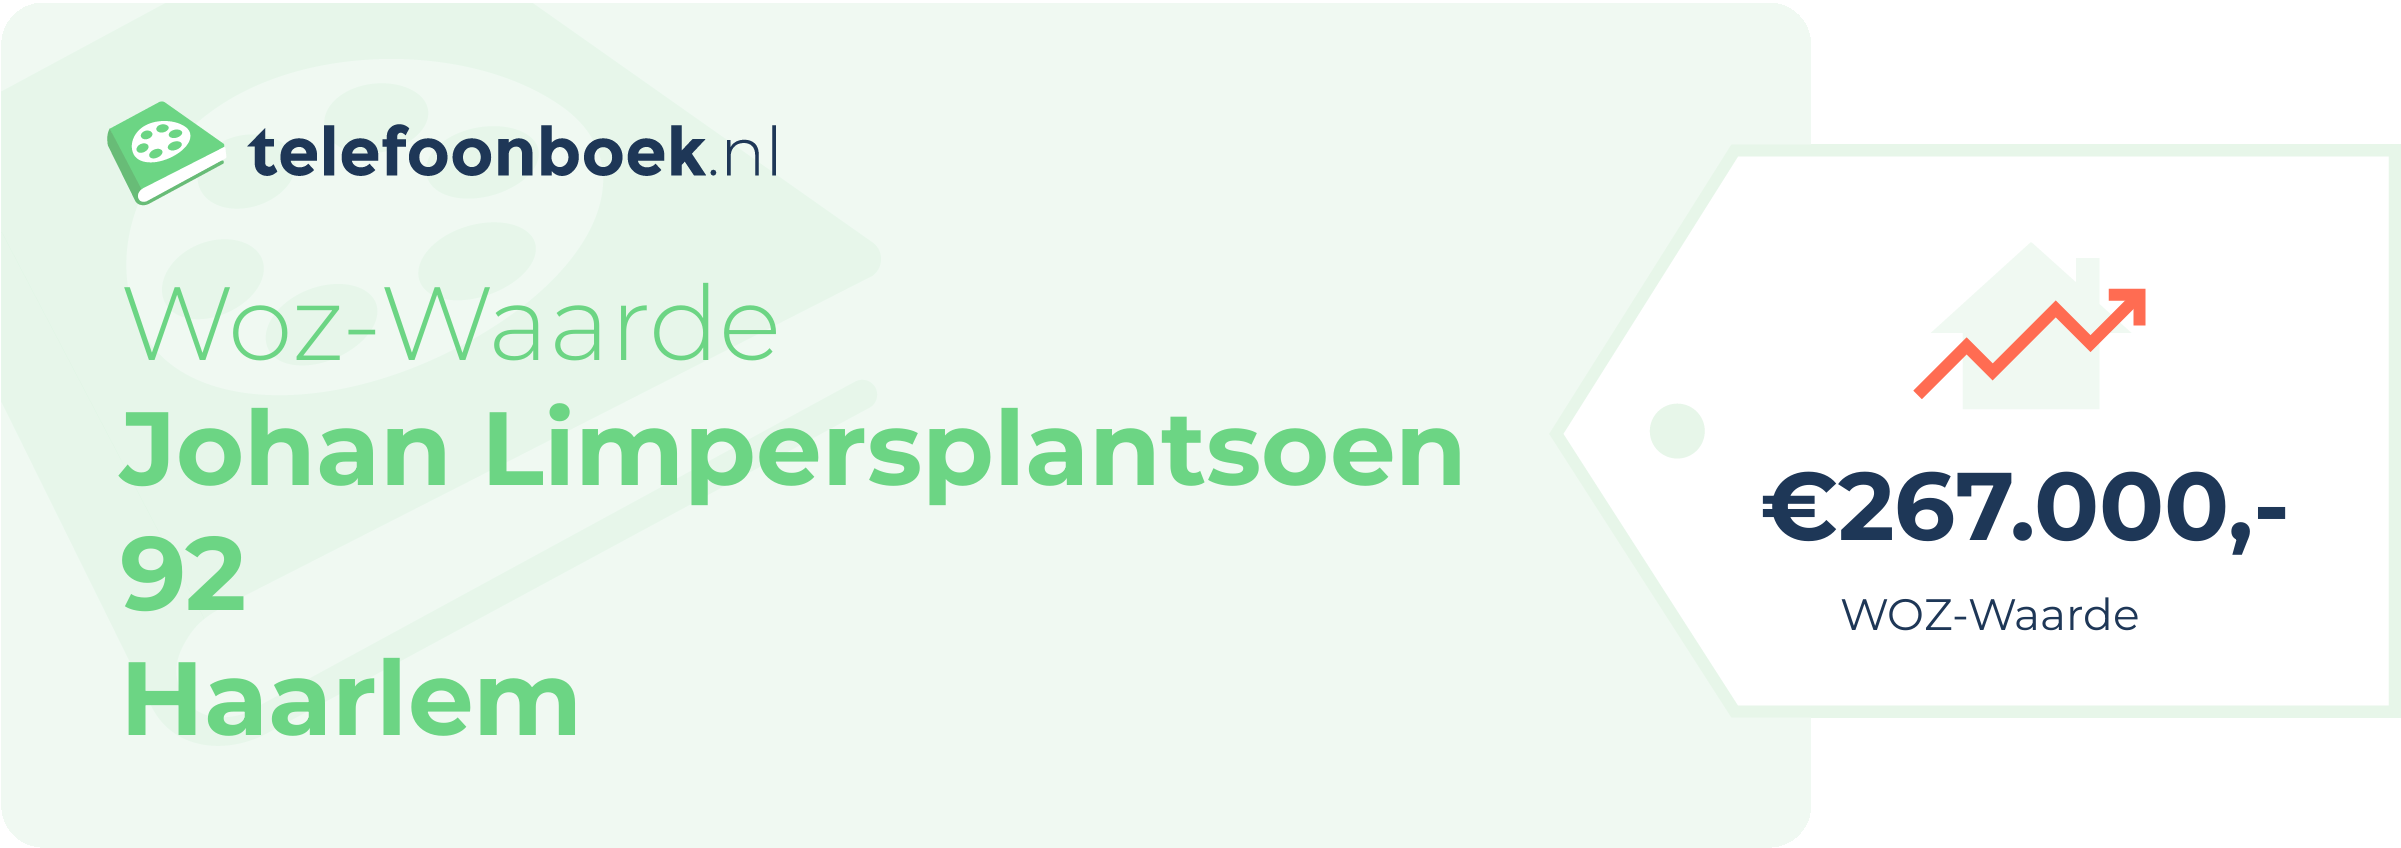 WOZ-waarde Johan Limpersplantsoen 92 Haarlem